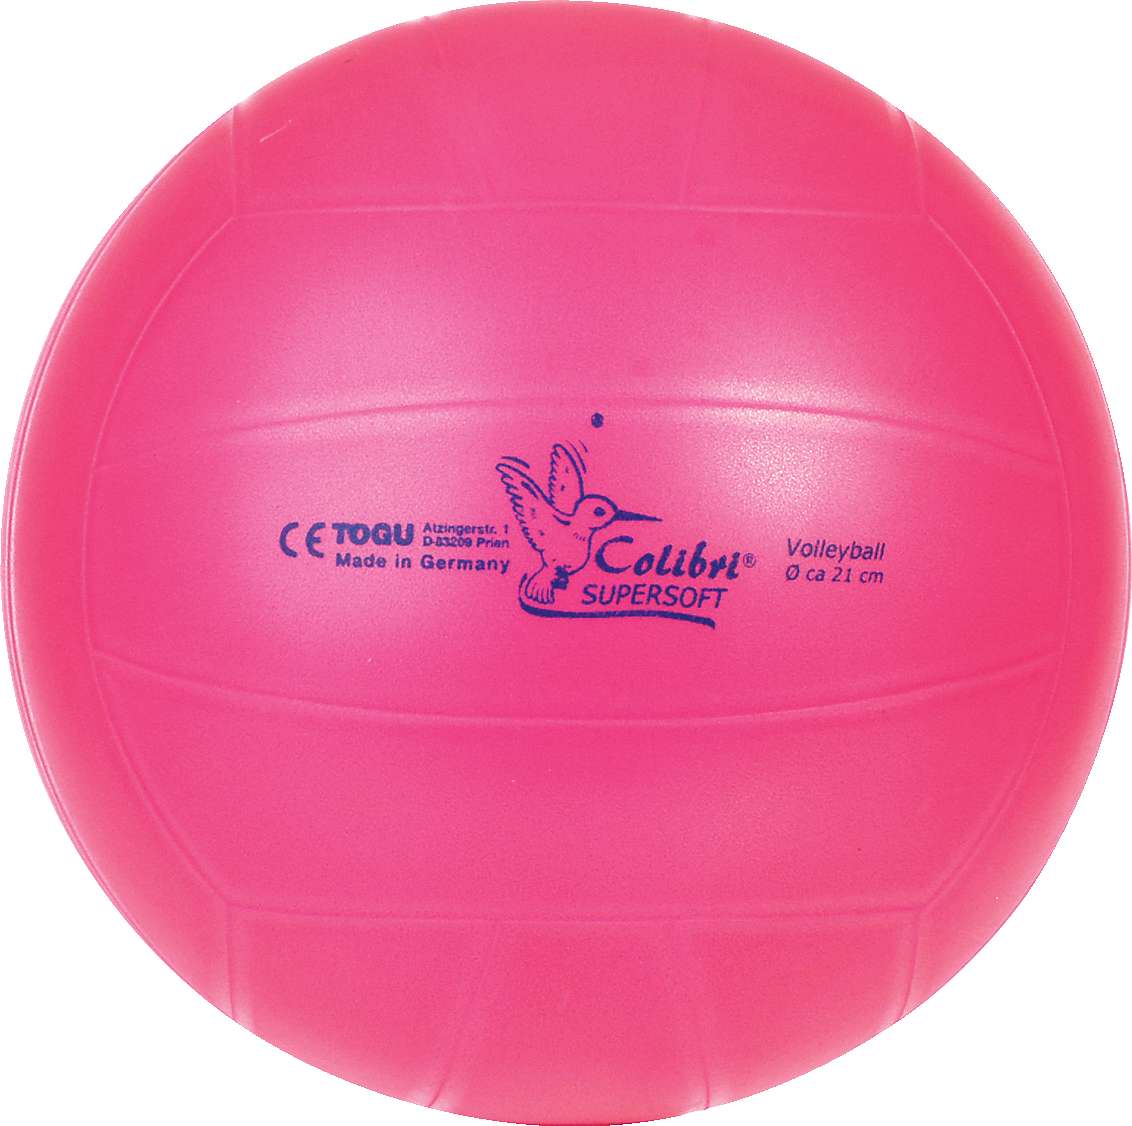 Togu Volleyball "Colibri Supersoft", Pink von Togu